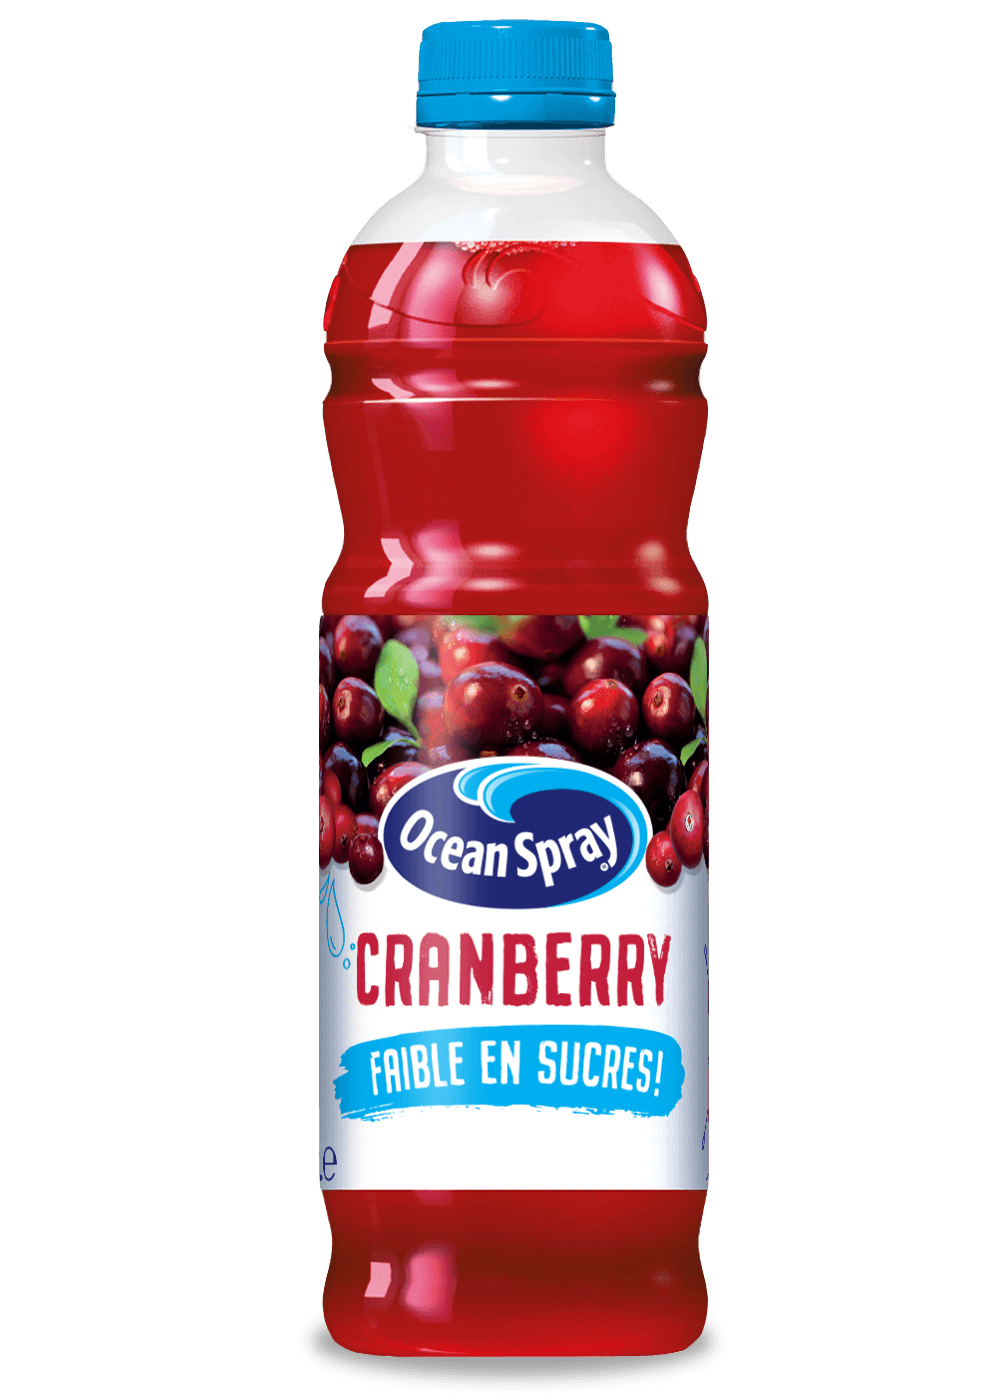 Cranberry faible en sucres